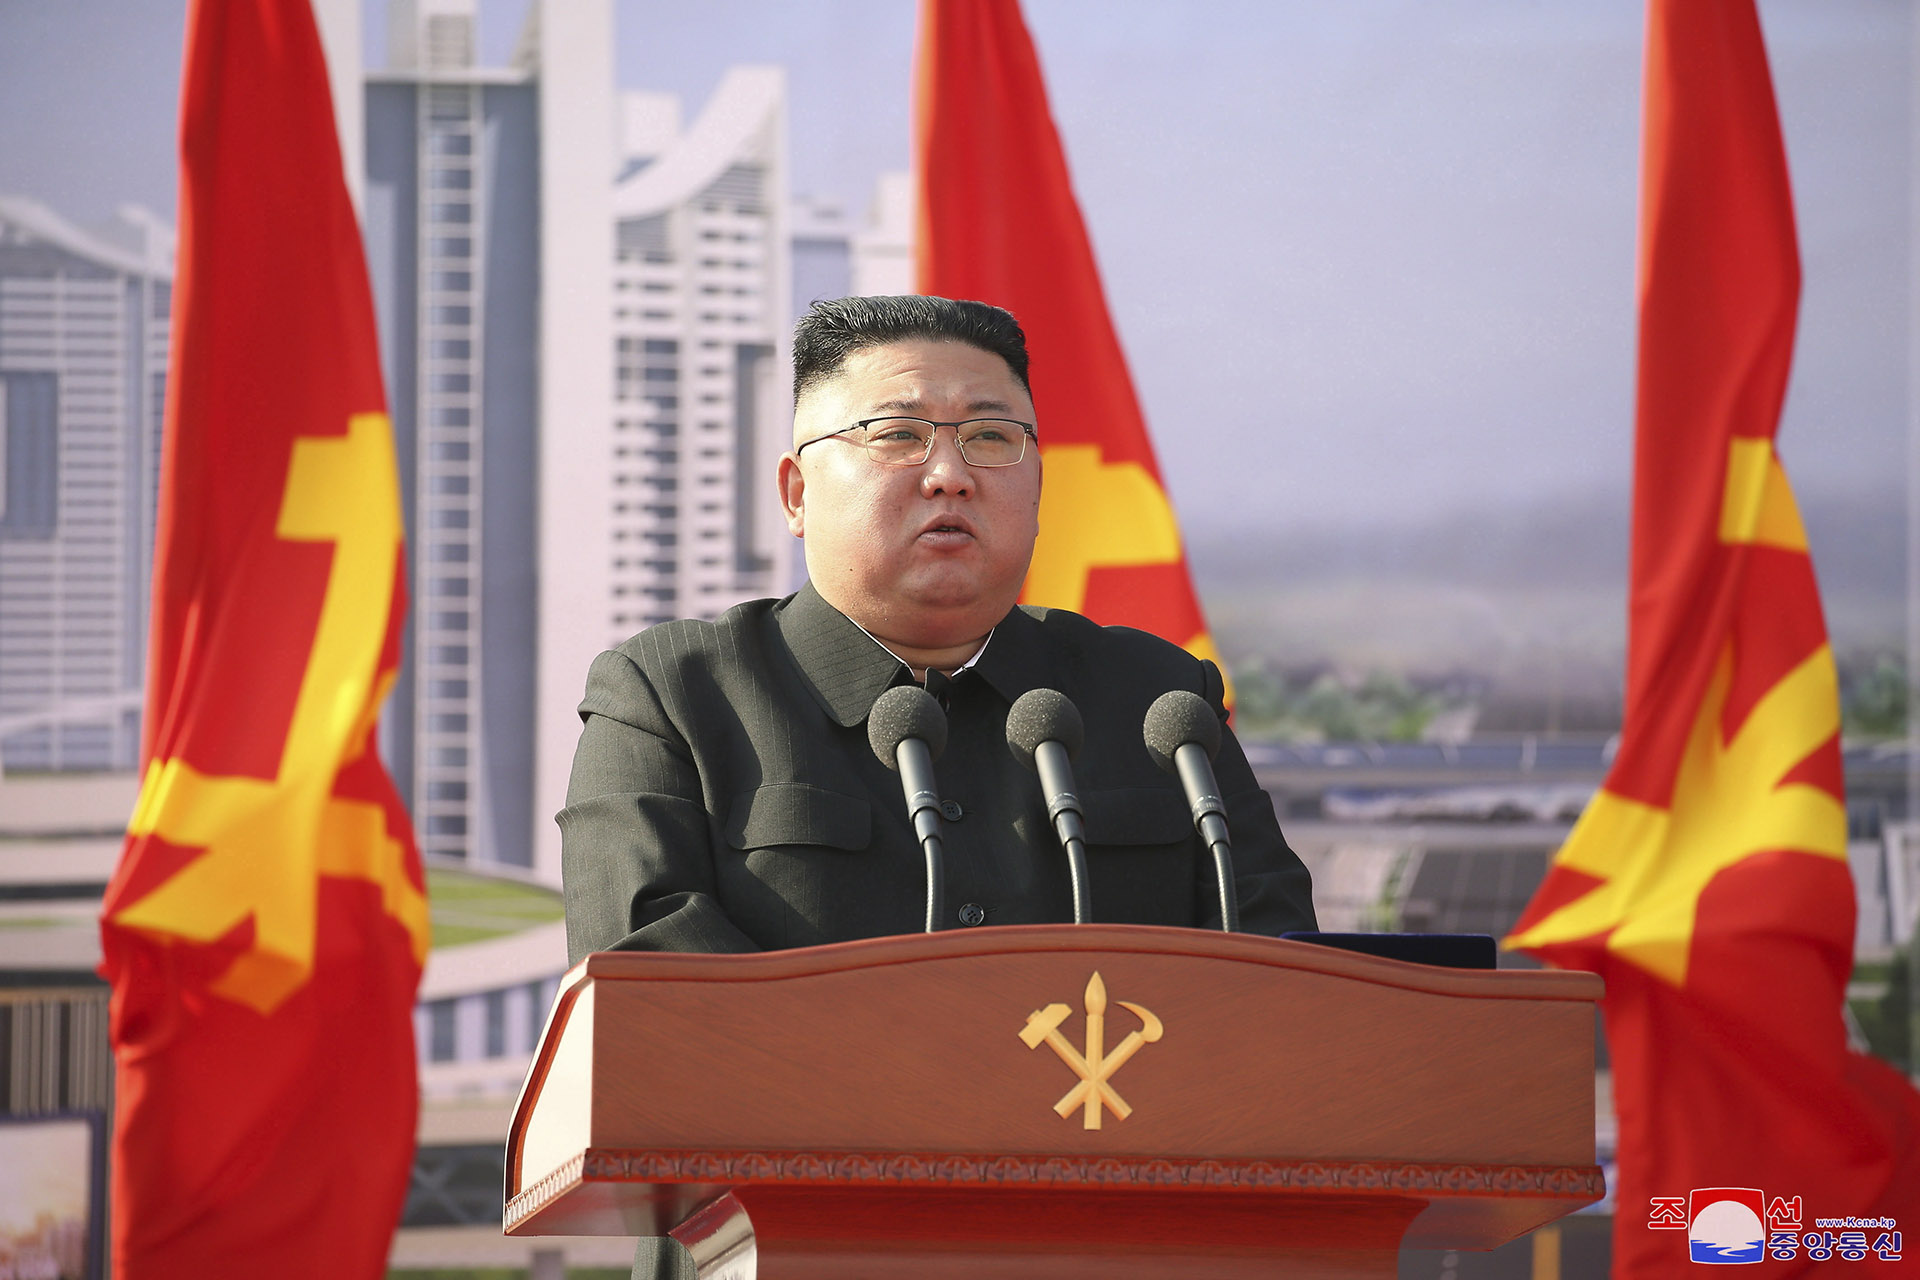 Észak-Korea már látja a fényt a koronavírus-alagút végén